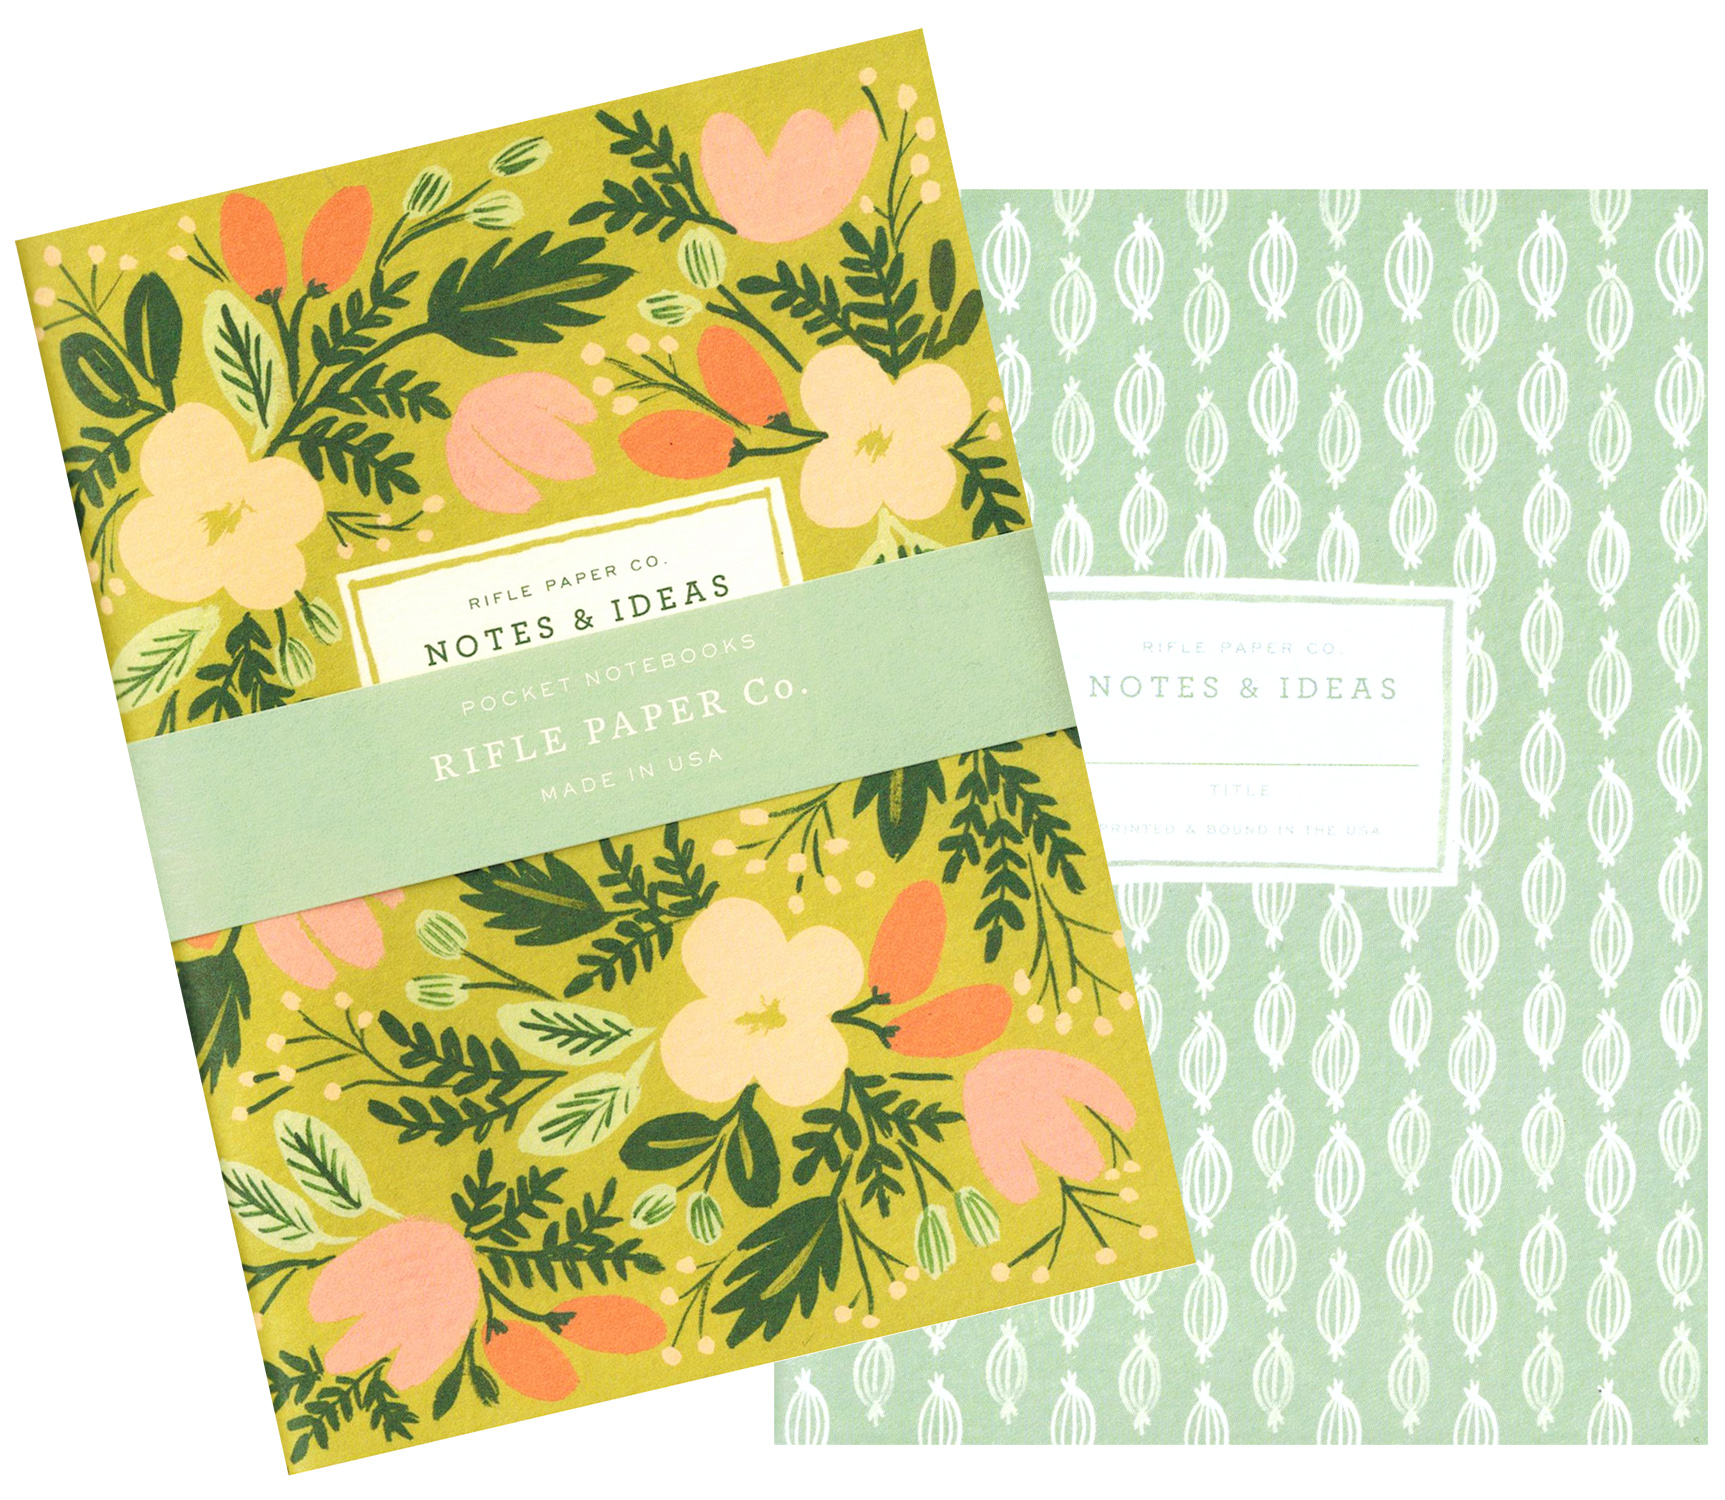 Rifle Paper Co. Pocket Notebook Set: Moss Garden Floral